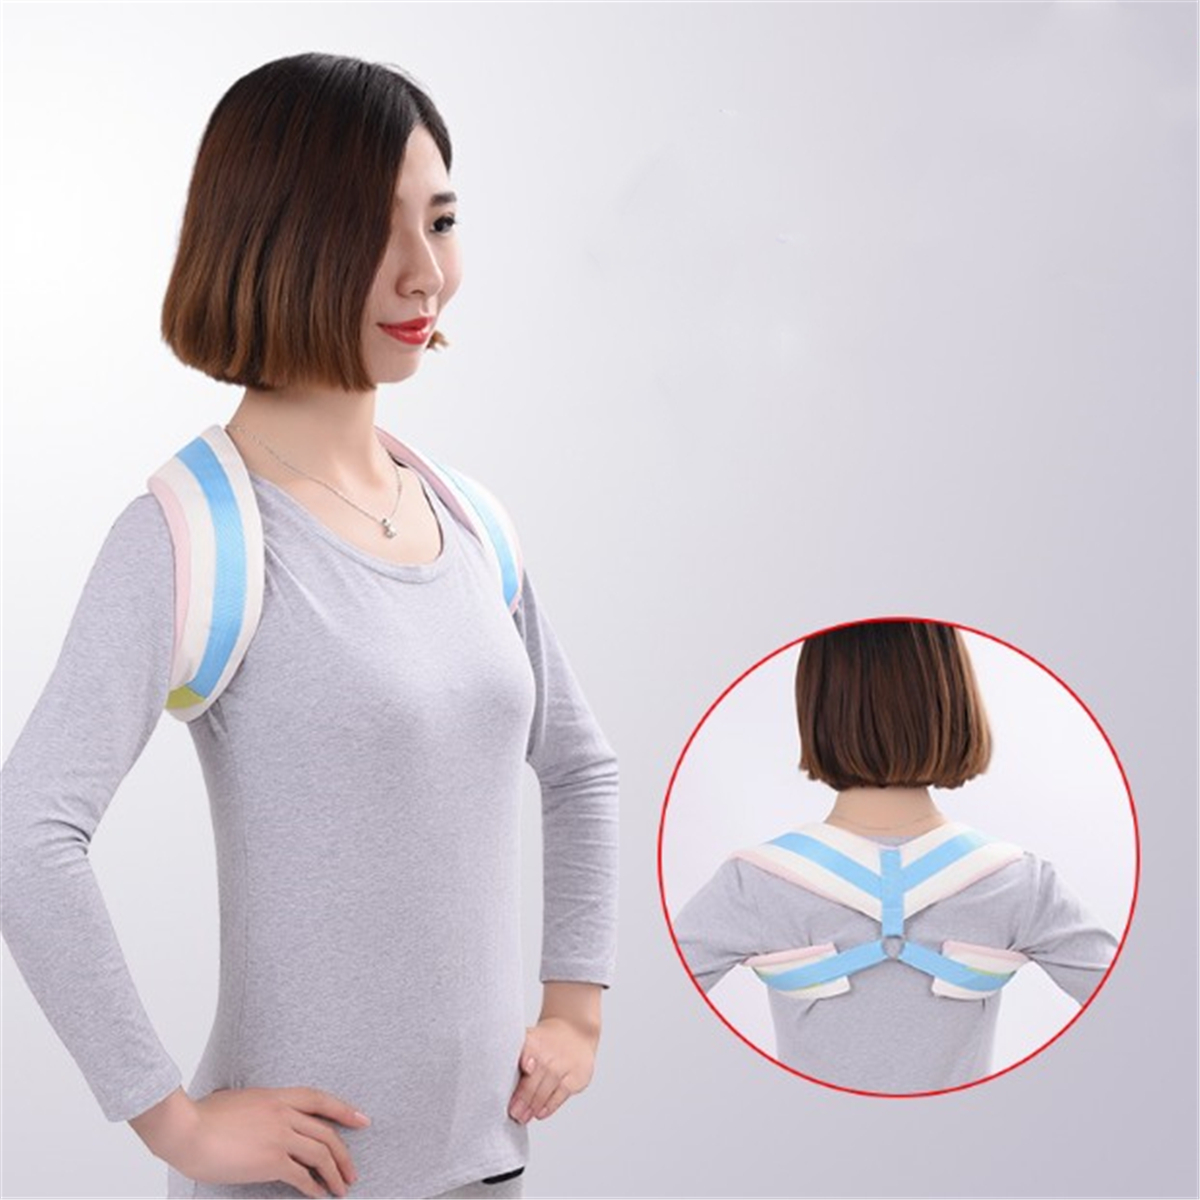 

Shoulder Back Support Belt Body Shape Posture Corrector